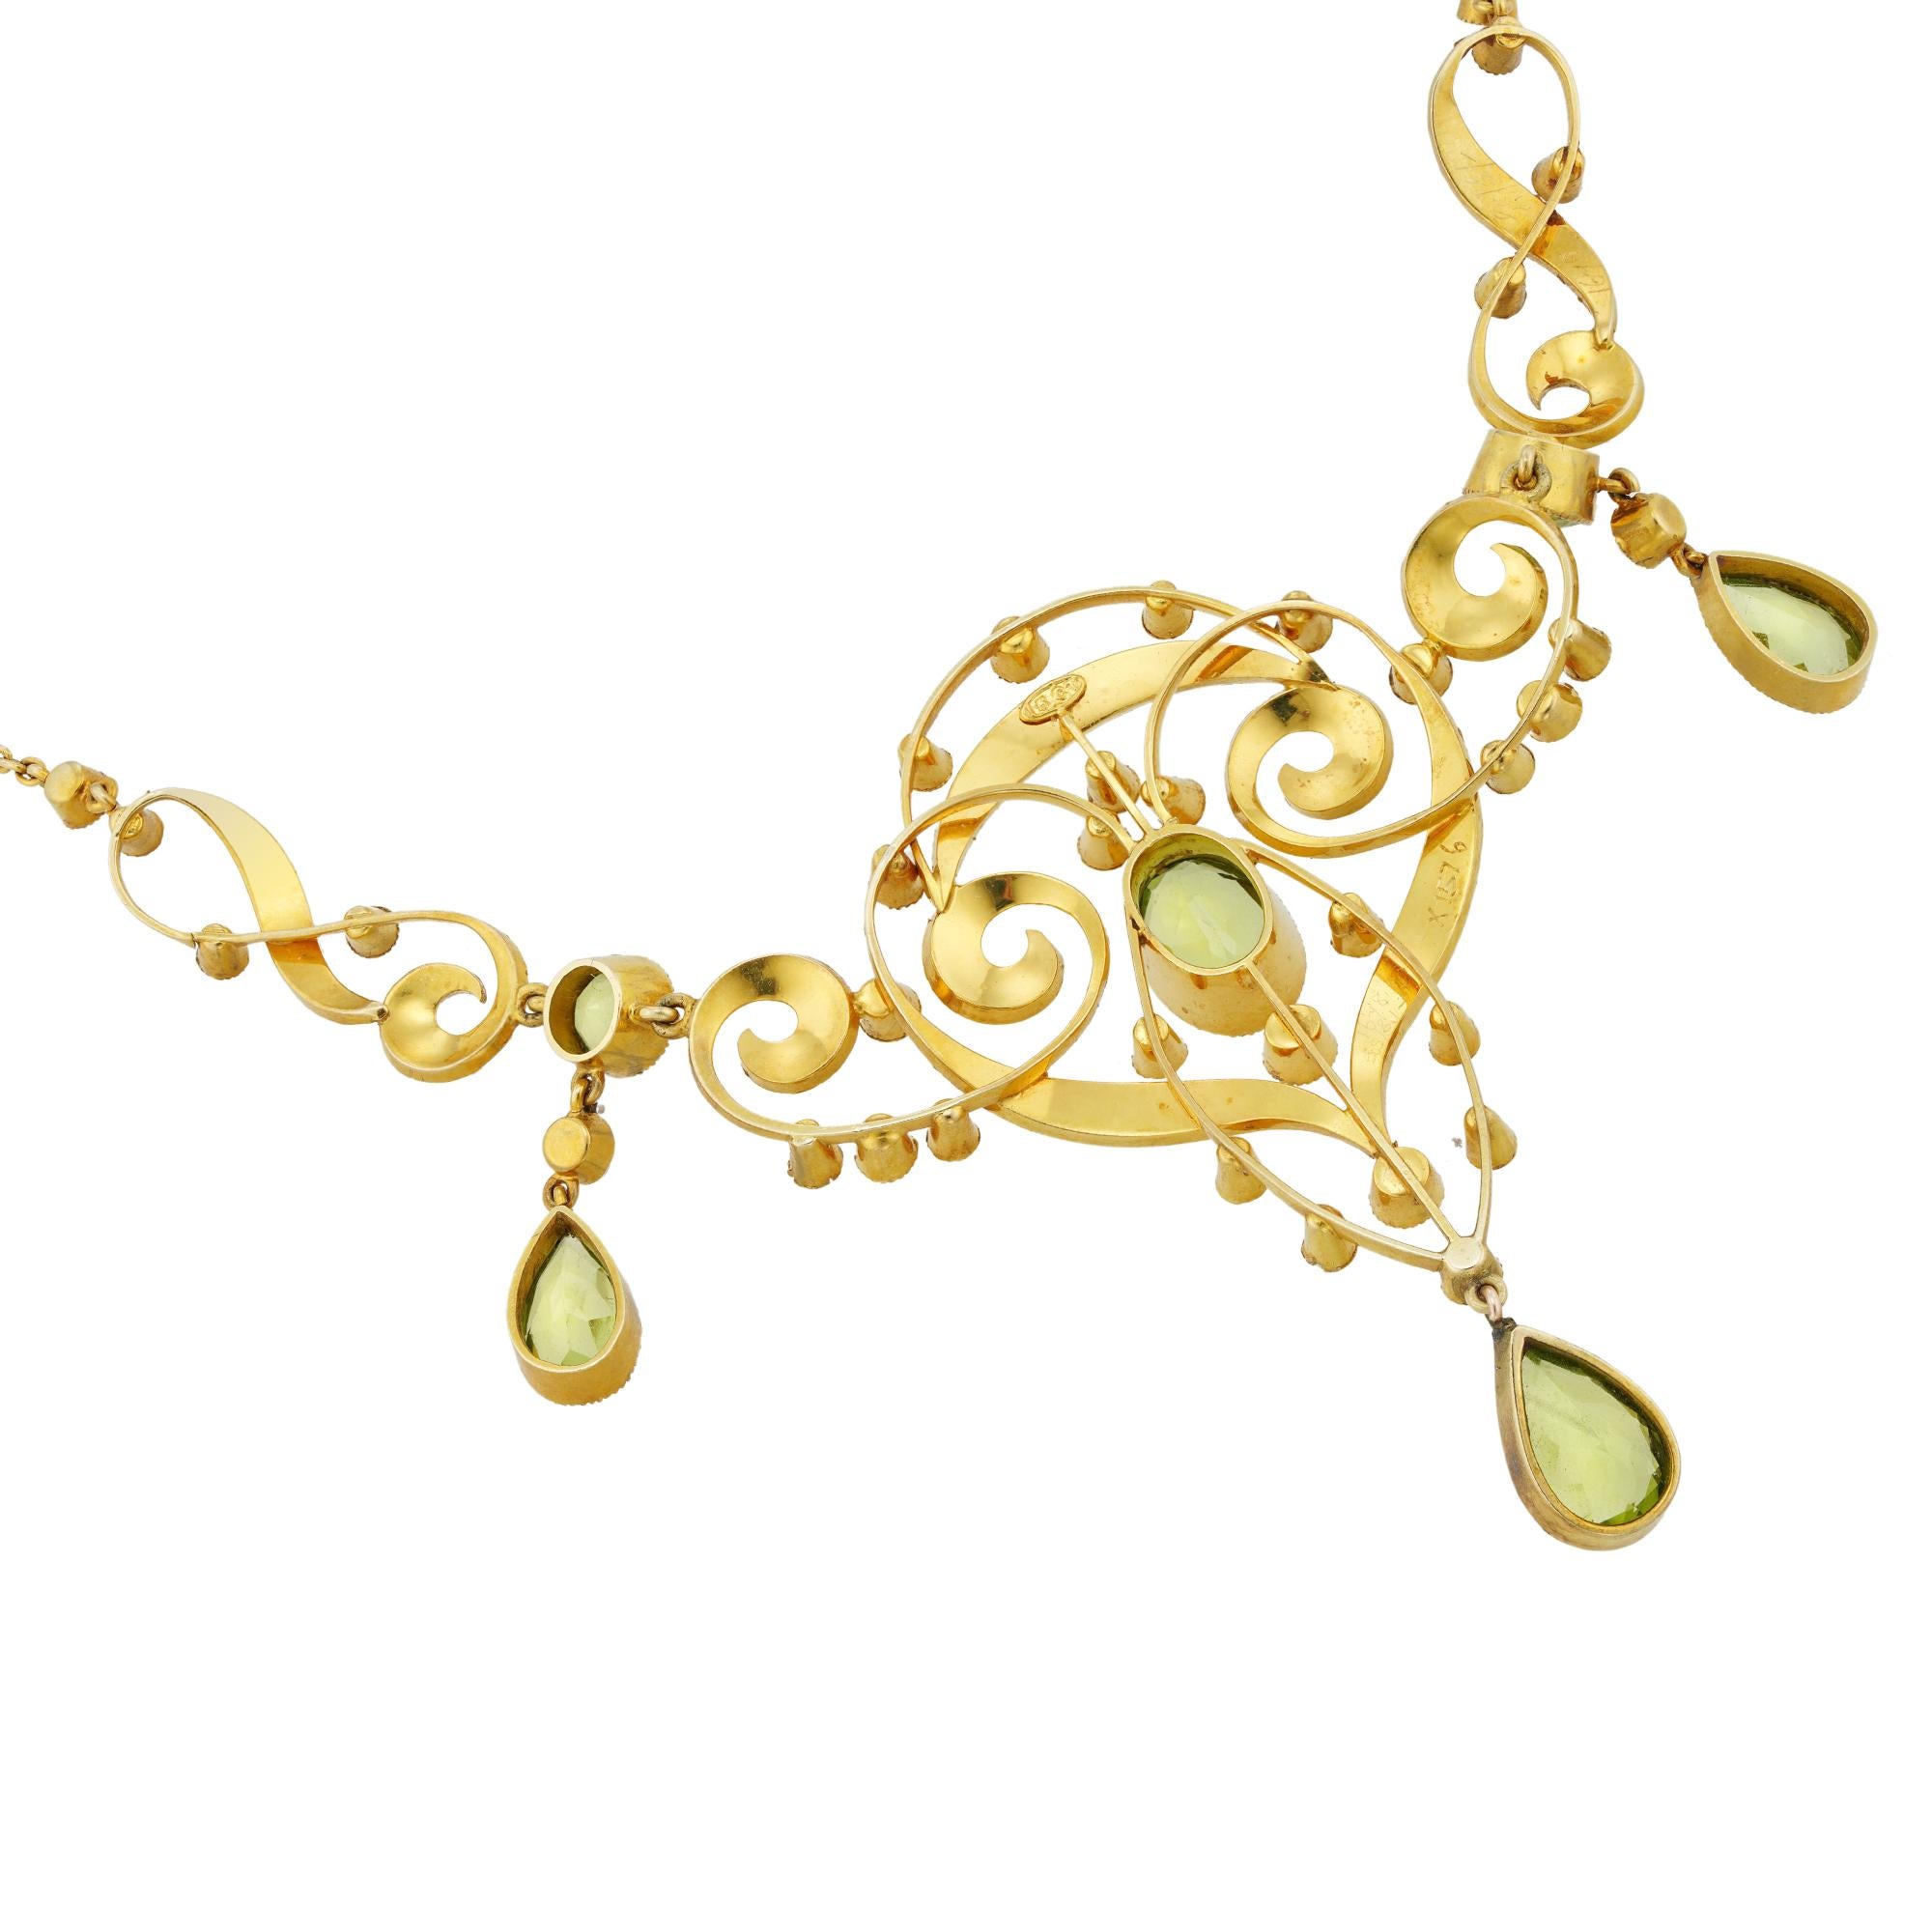 Eine edwardianische Peridot- und Perlenkette, in der Mitte ein ovaler, facettierter Peridot mit den Maßen 10 x 7 mm, gefasst in einer Gelbgoldspange, umgeben von einem goldenen, durchbrochenen, mit kleinen Halbperlen verzierten Rahmen, an dem ein